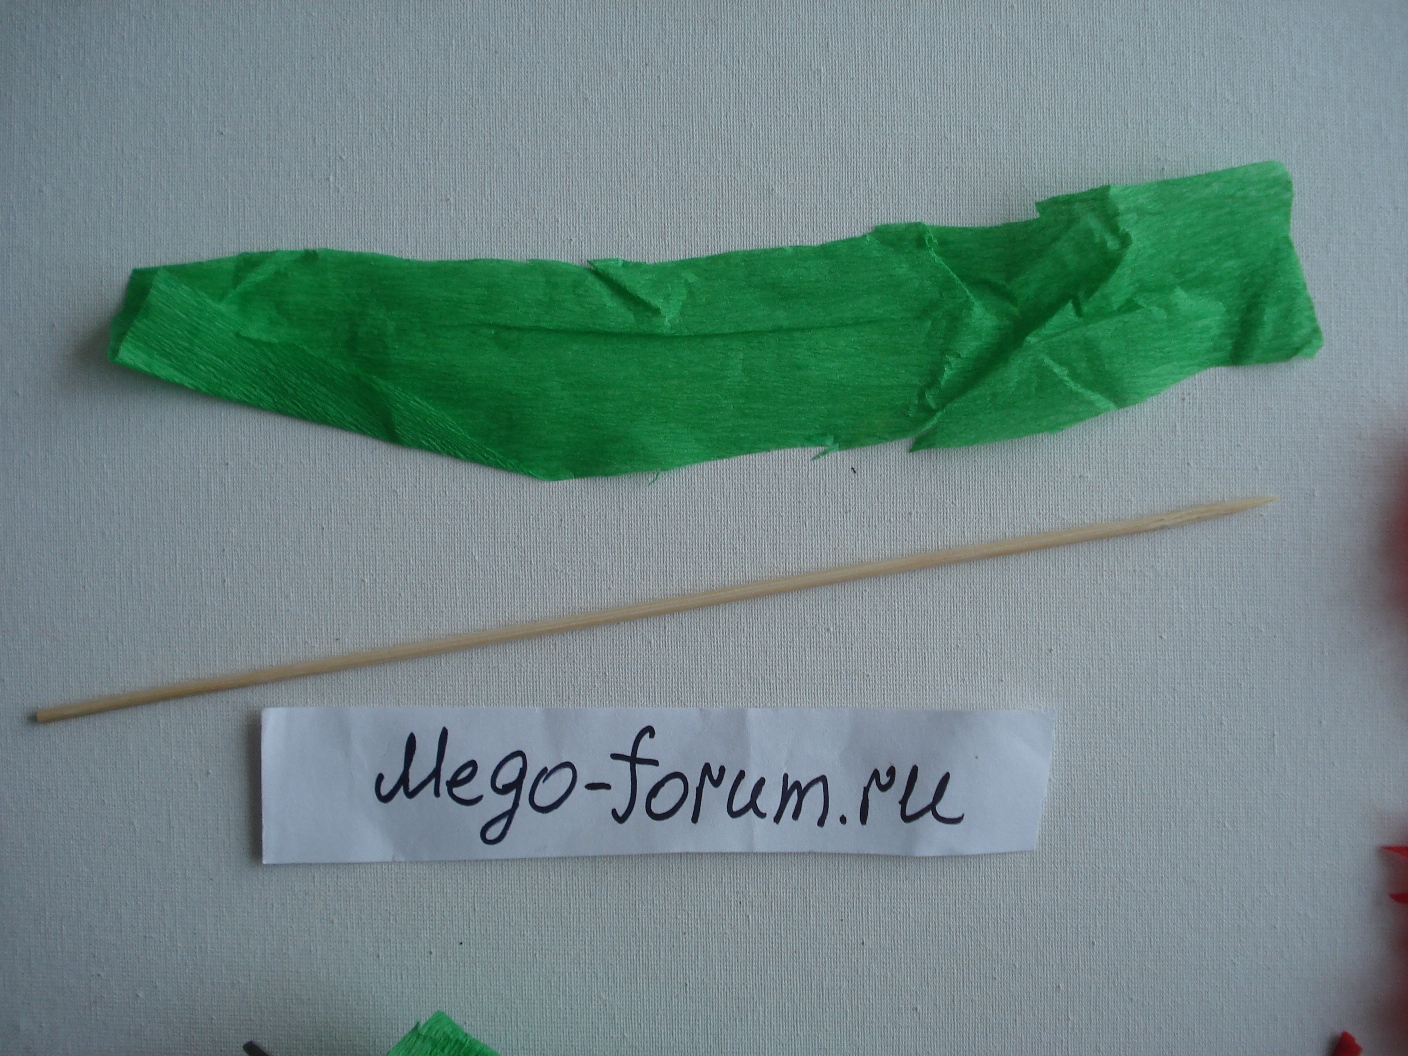  Сделаем стебель для гвоздики. Из гофрированной бумаги зеленого цвета вырежем длинную полоску.